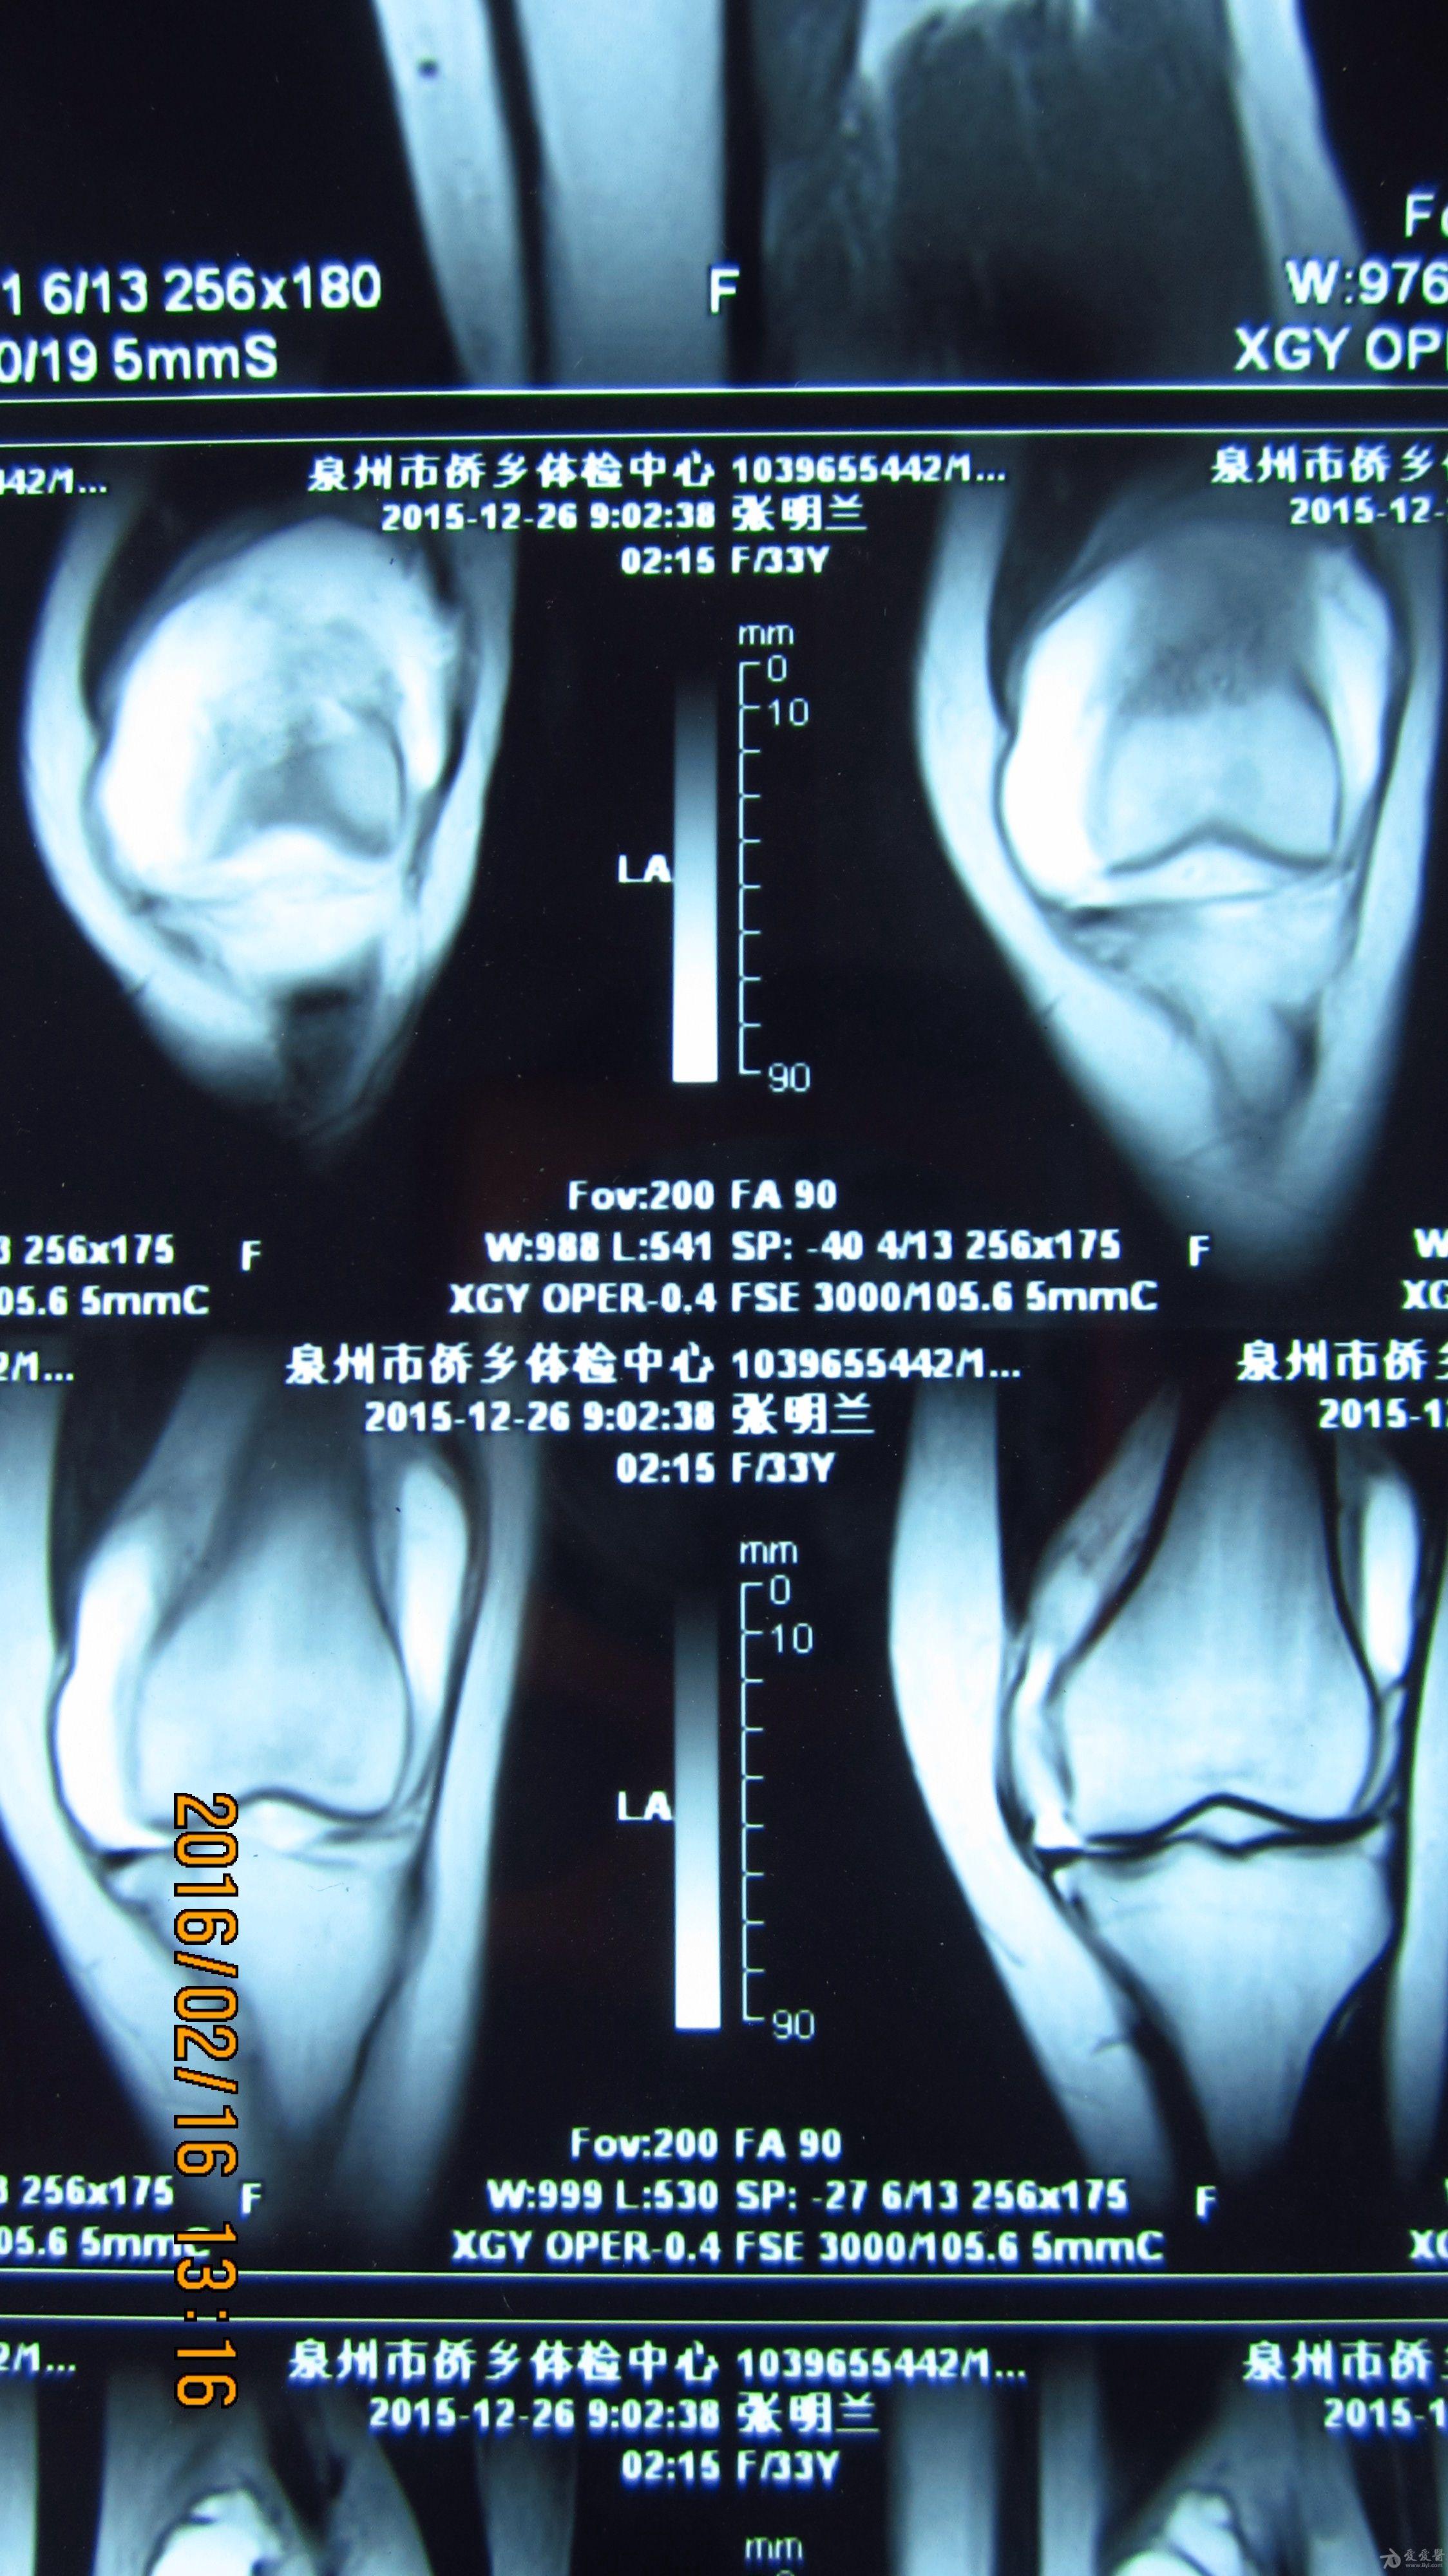 膝关节积液ct图片解析图片